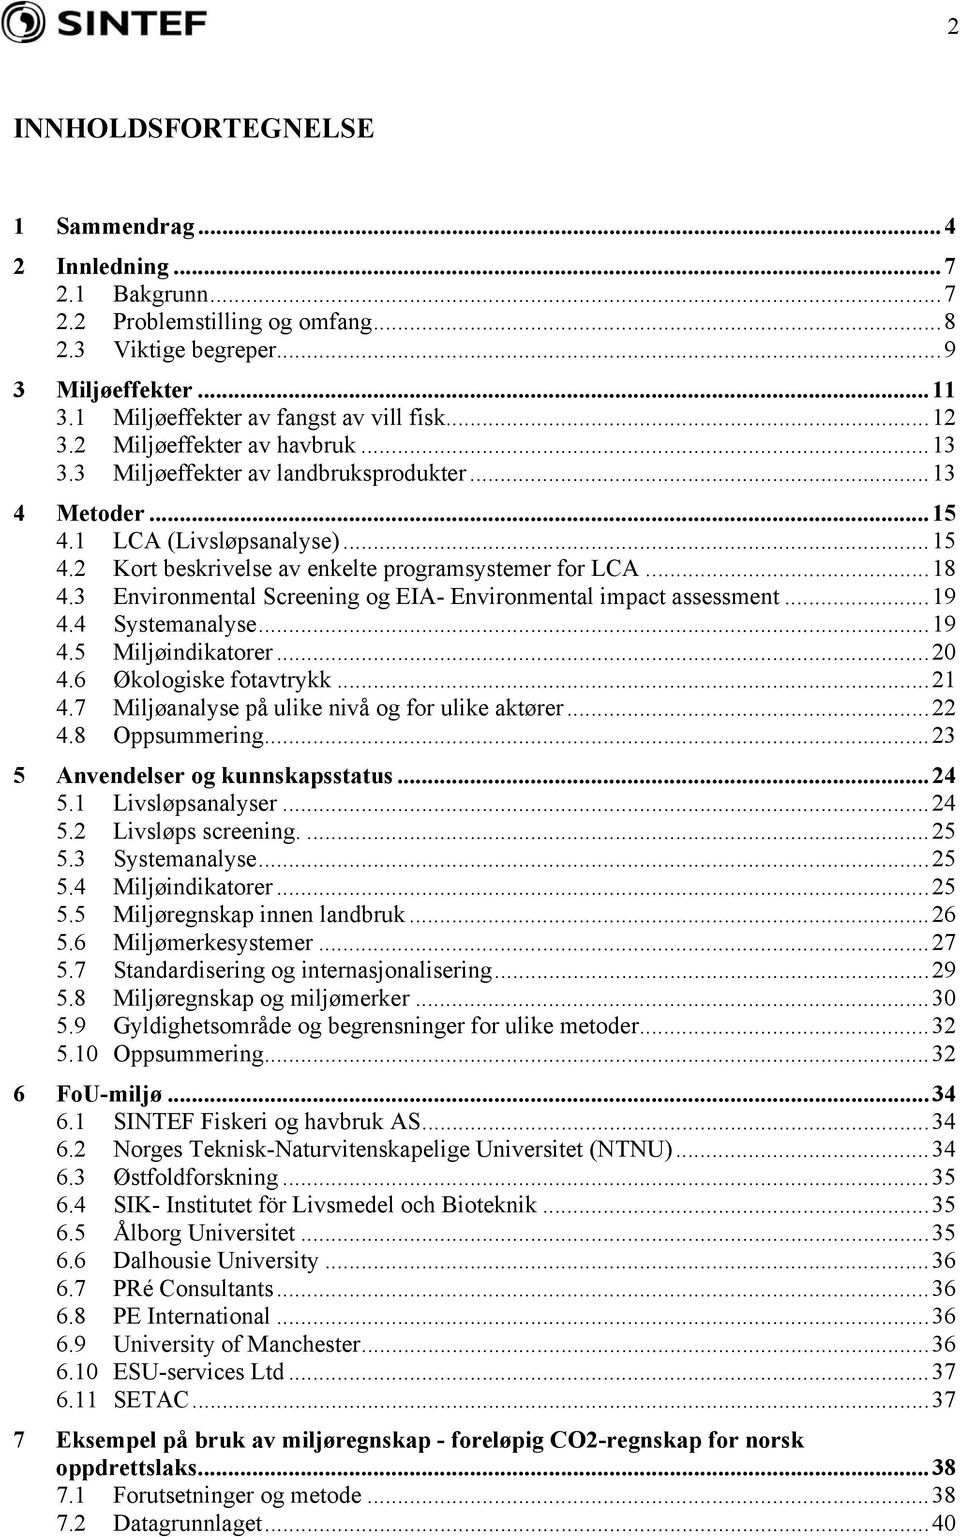 3 Environmental Screening og EIA- Environmental impact assessment...19 4.4 Systemanalyse...19 4.5 Miljøindikatorer...20 4.6 Økologiske fotavtrykk...21 4.